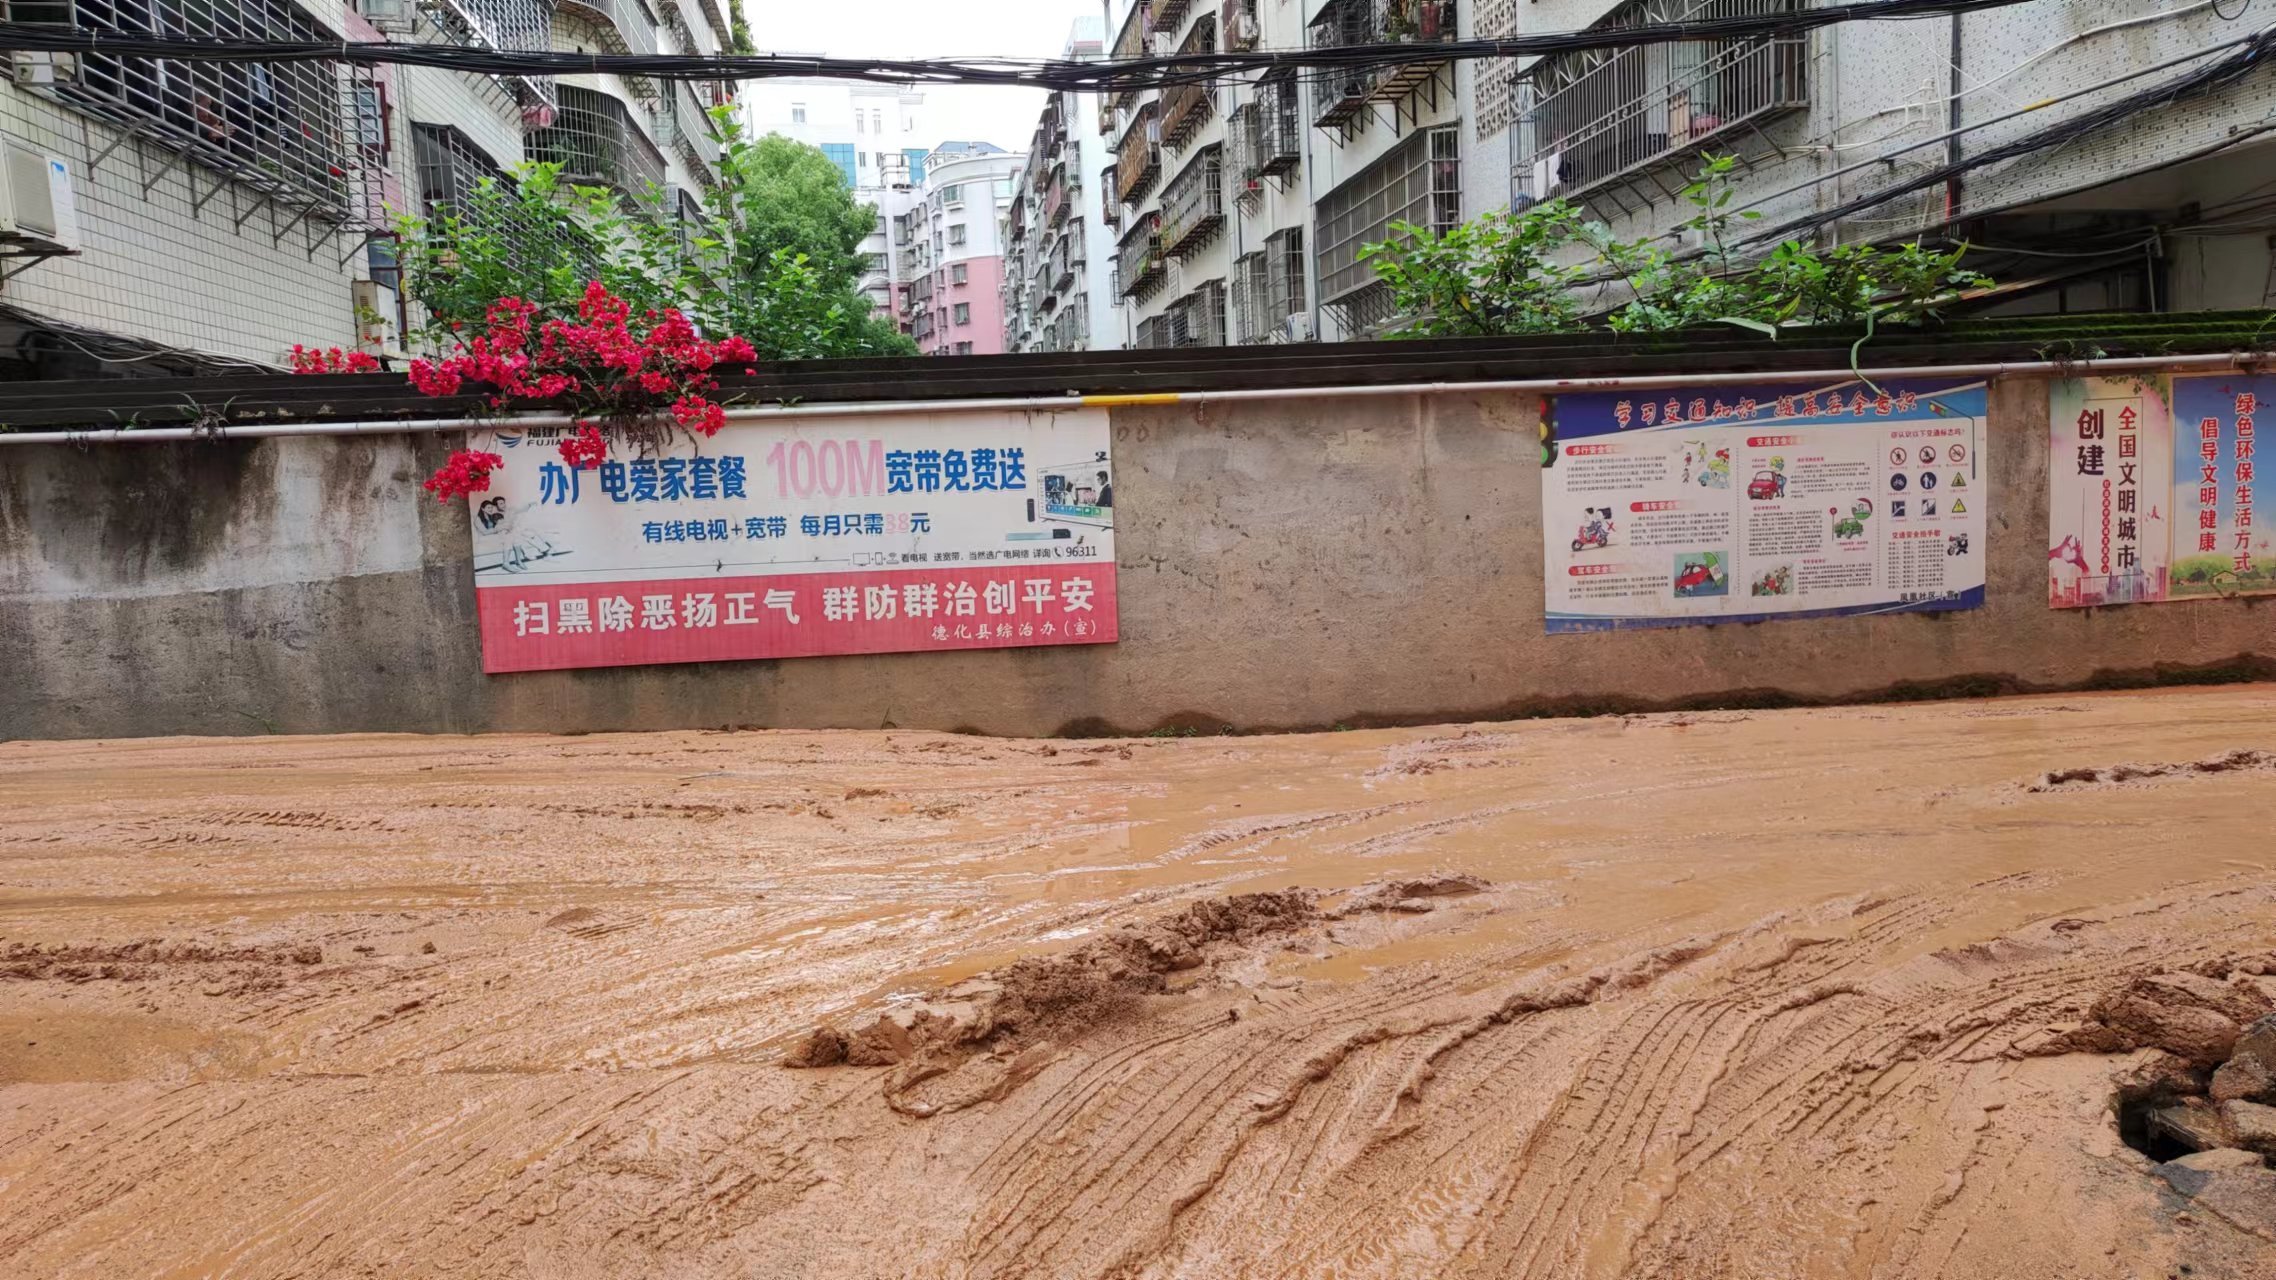 凤凰社区西华岩路口遇到雨天道路泥泞不堪，出行受阻。恳请相关部门协调解决一下。